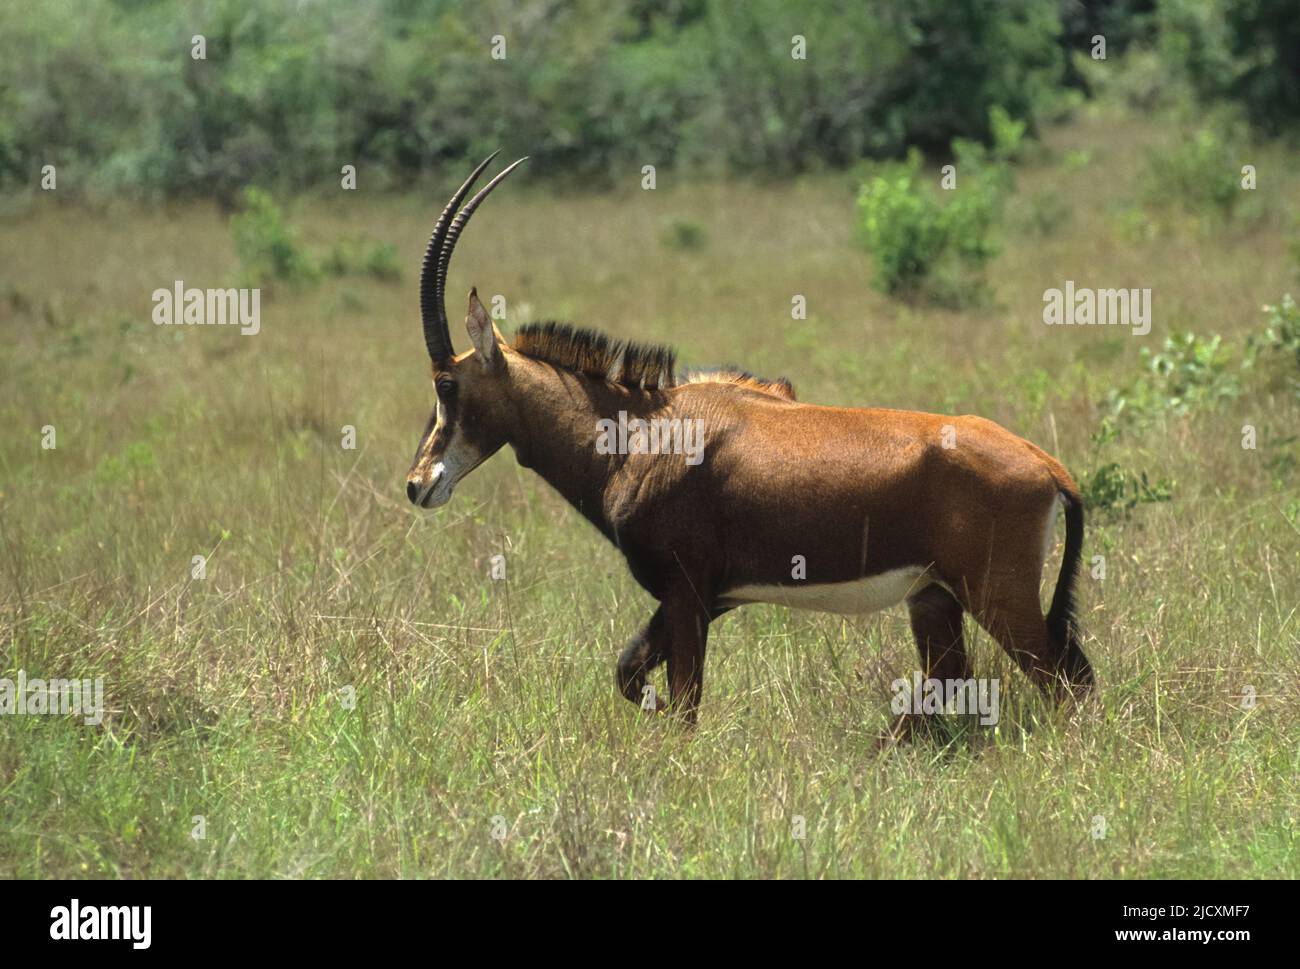 Antilope de Roan (Hippotragus equinus) photographiée au Zimbabwe Banque D'Images